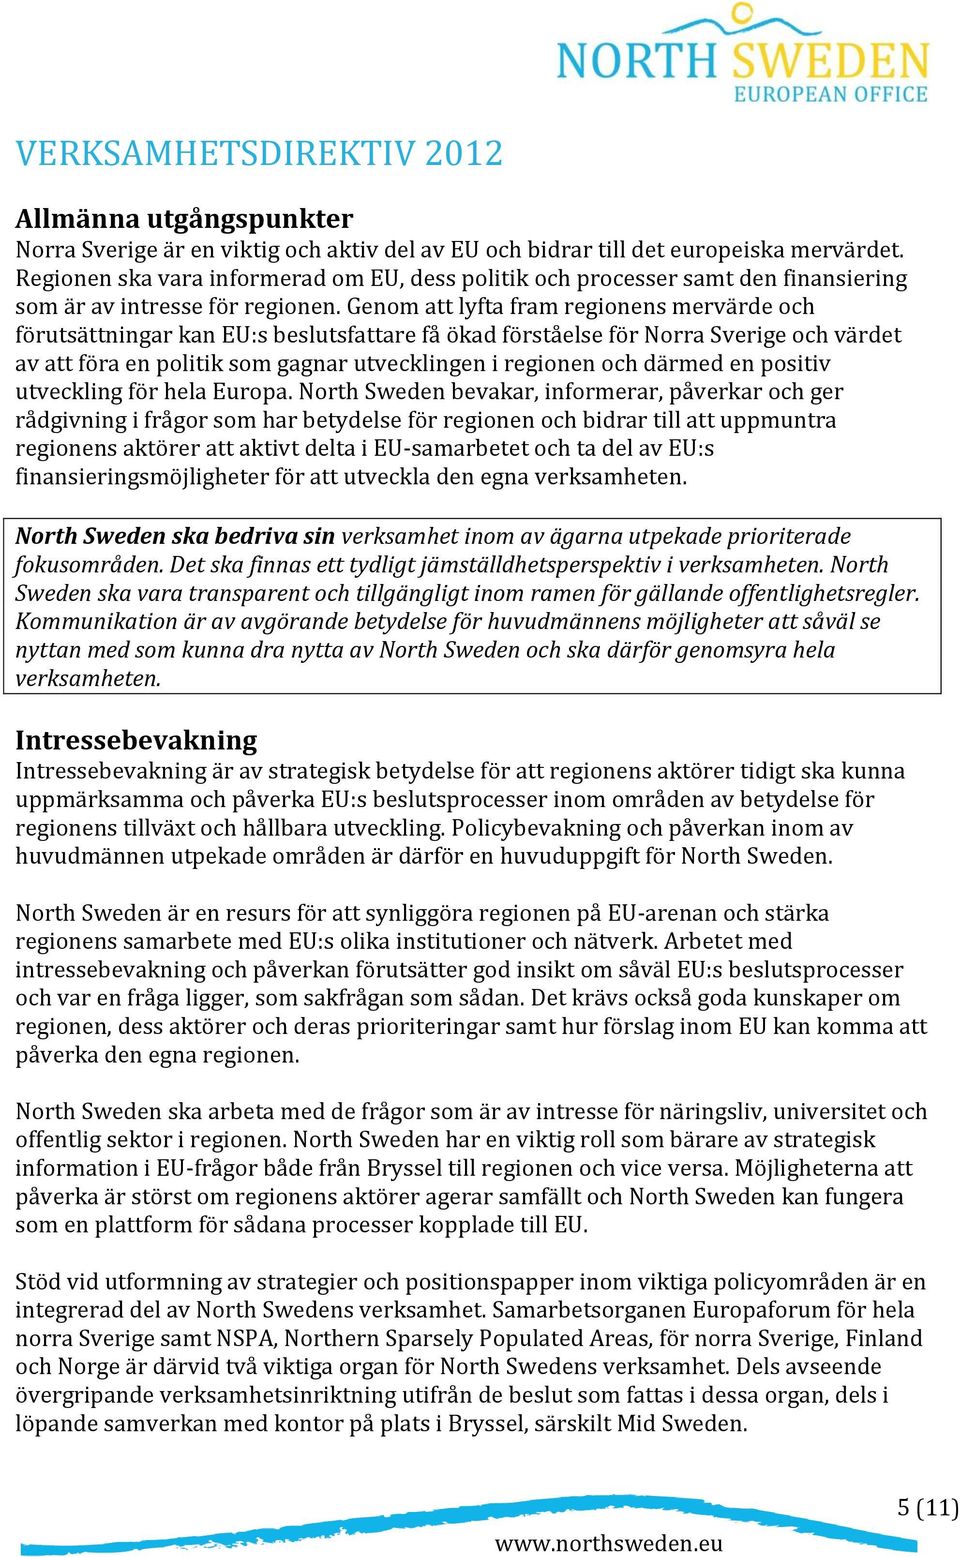 Genom att lyfta fram regionens mervärde och förutsättningar kan EU:s beslutsfattare få ökad förståelse för Norra Sverige och värdet av att föra en politik som gagnar utvecklingen i regionen och